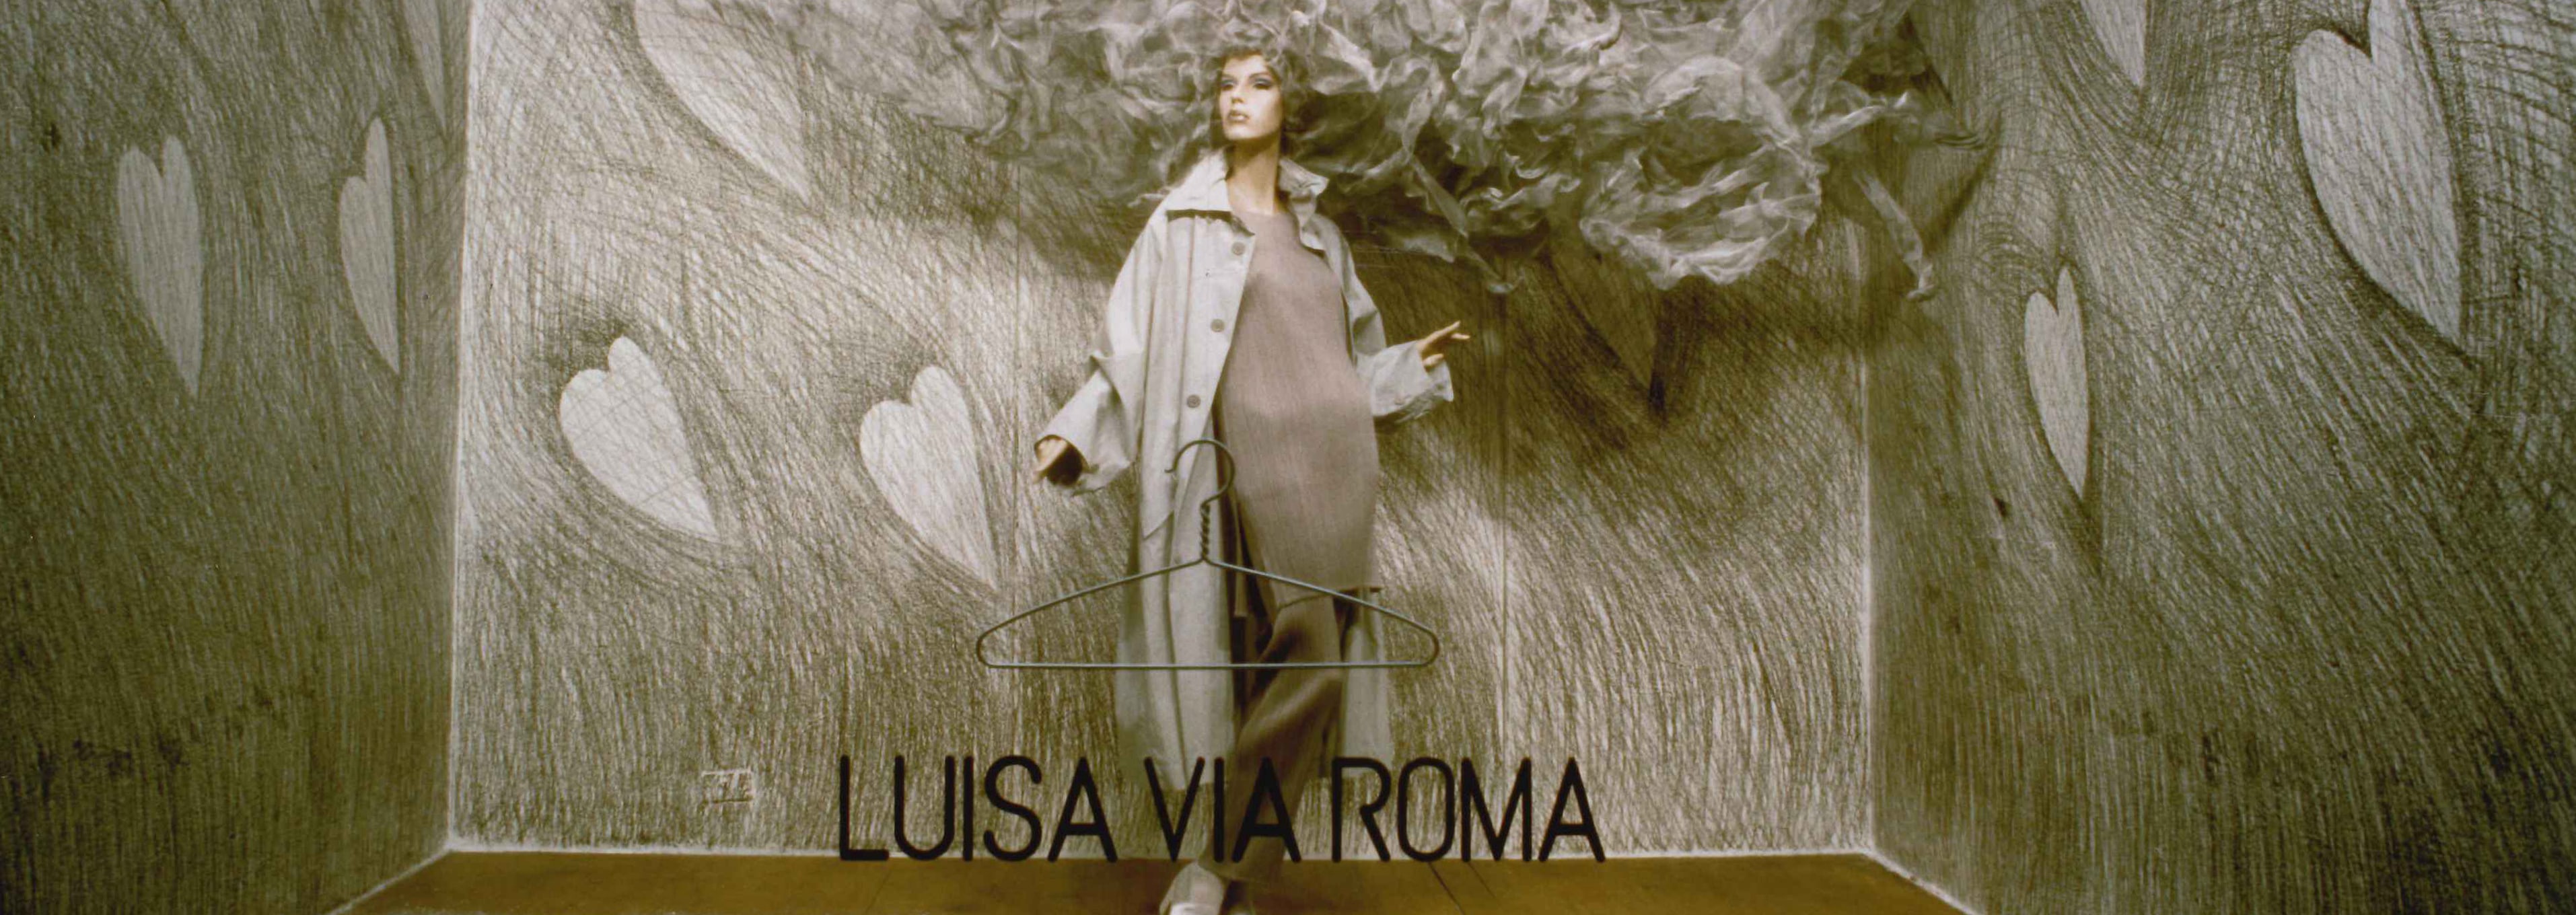 LuisaViaRoma'nın vitrin tasarımlarının arkasındaki yetenek Lorenzo Gemma